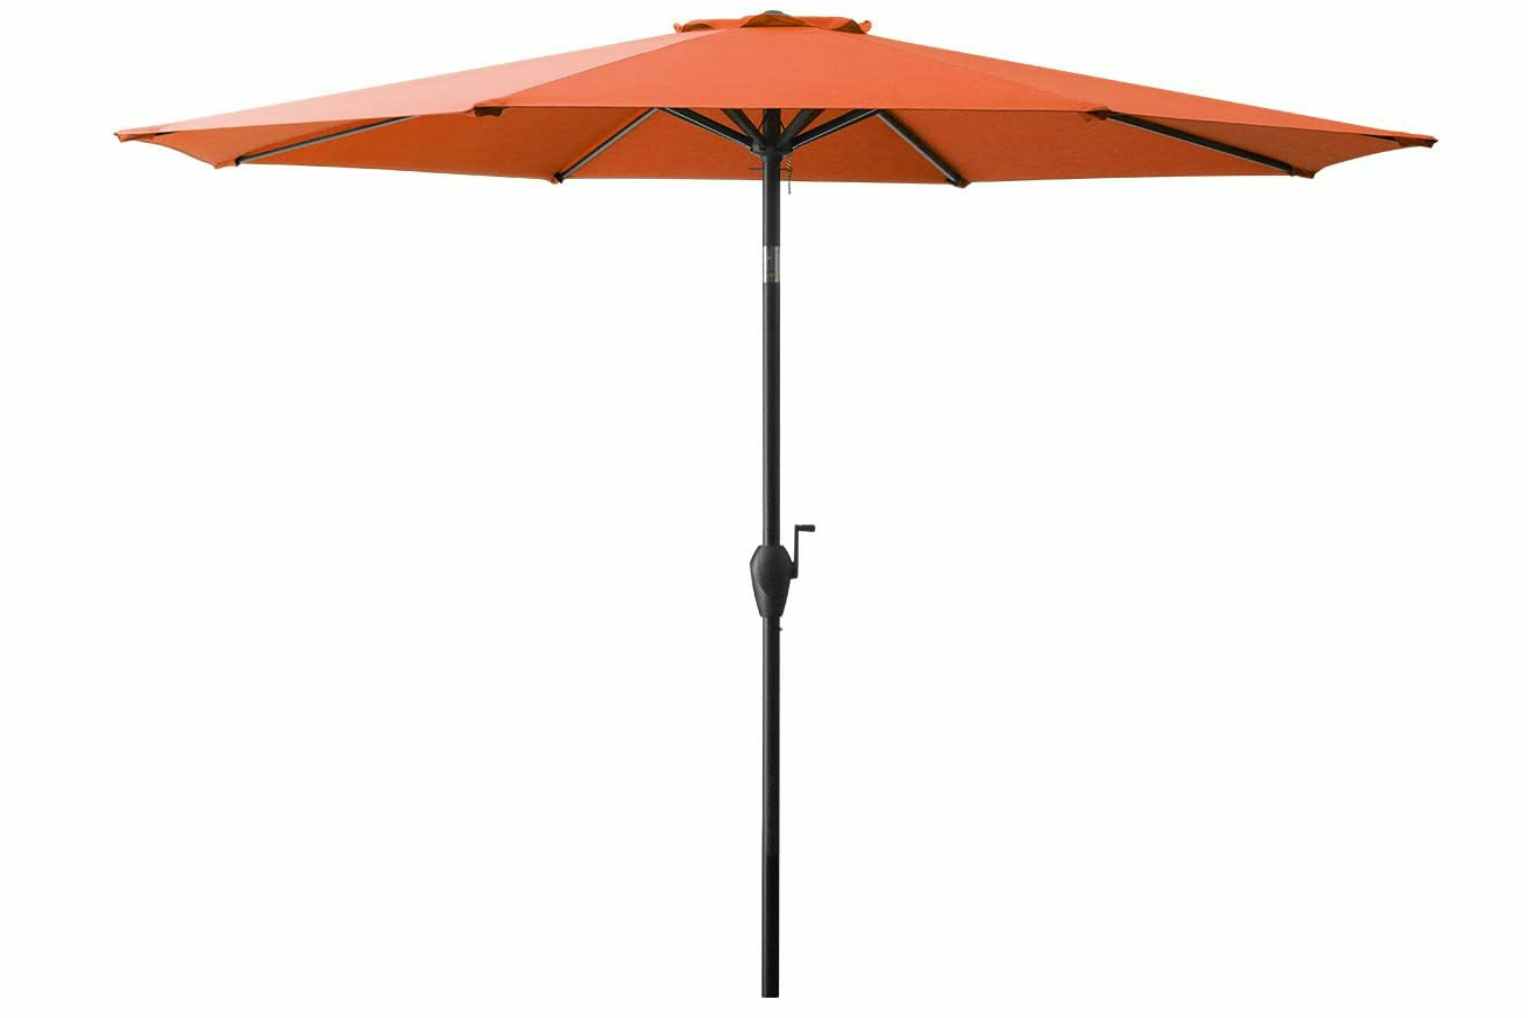 Orange patio umbrella on a white background